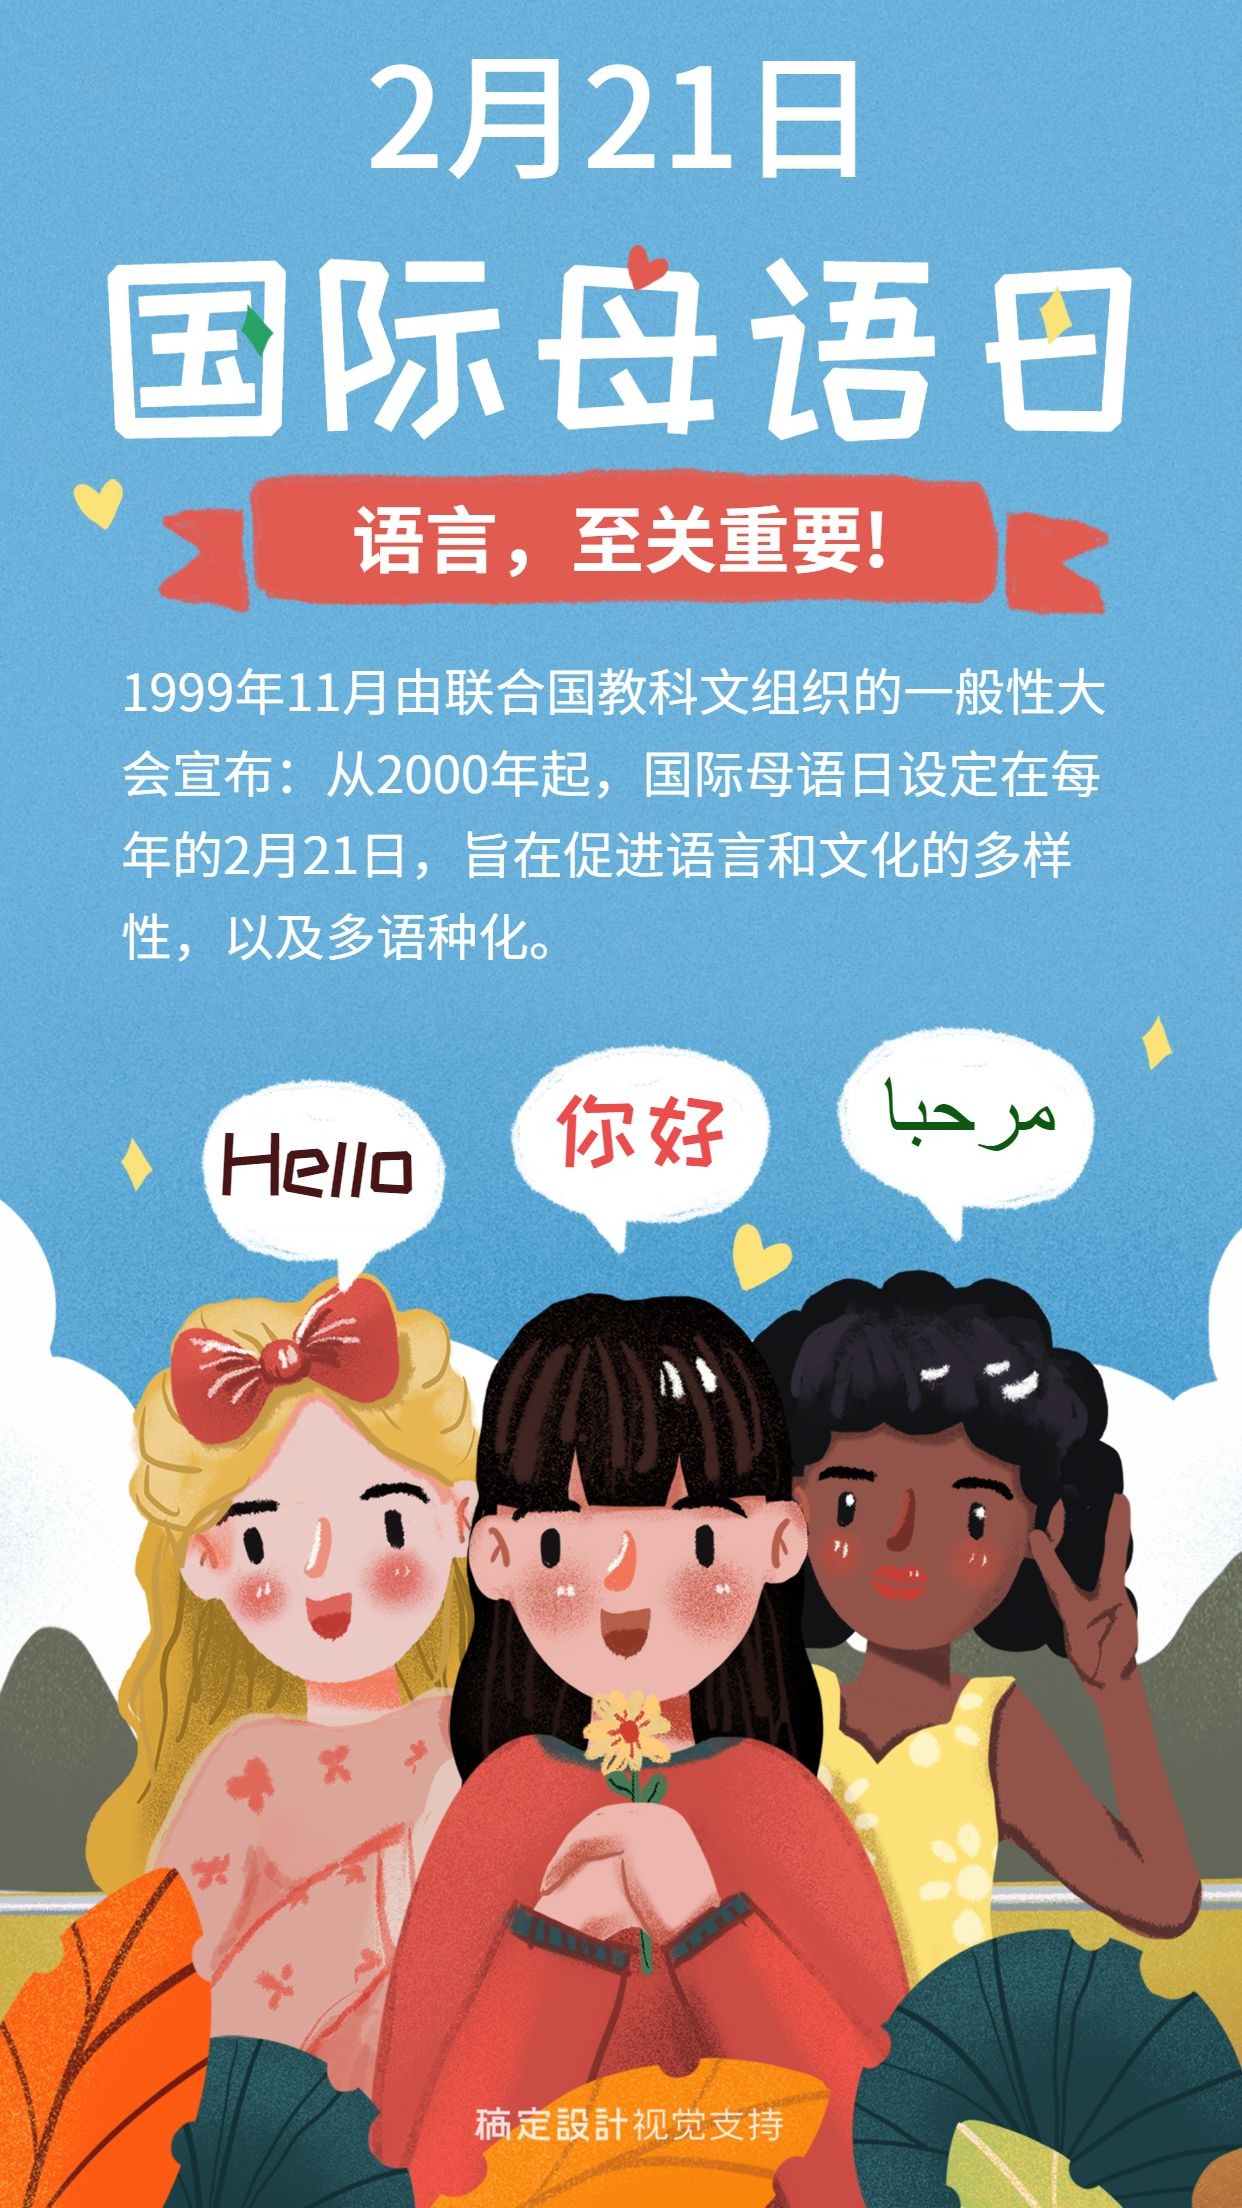 国际母语日文化宣传海报